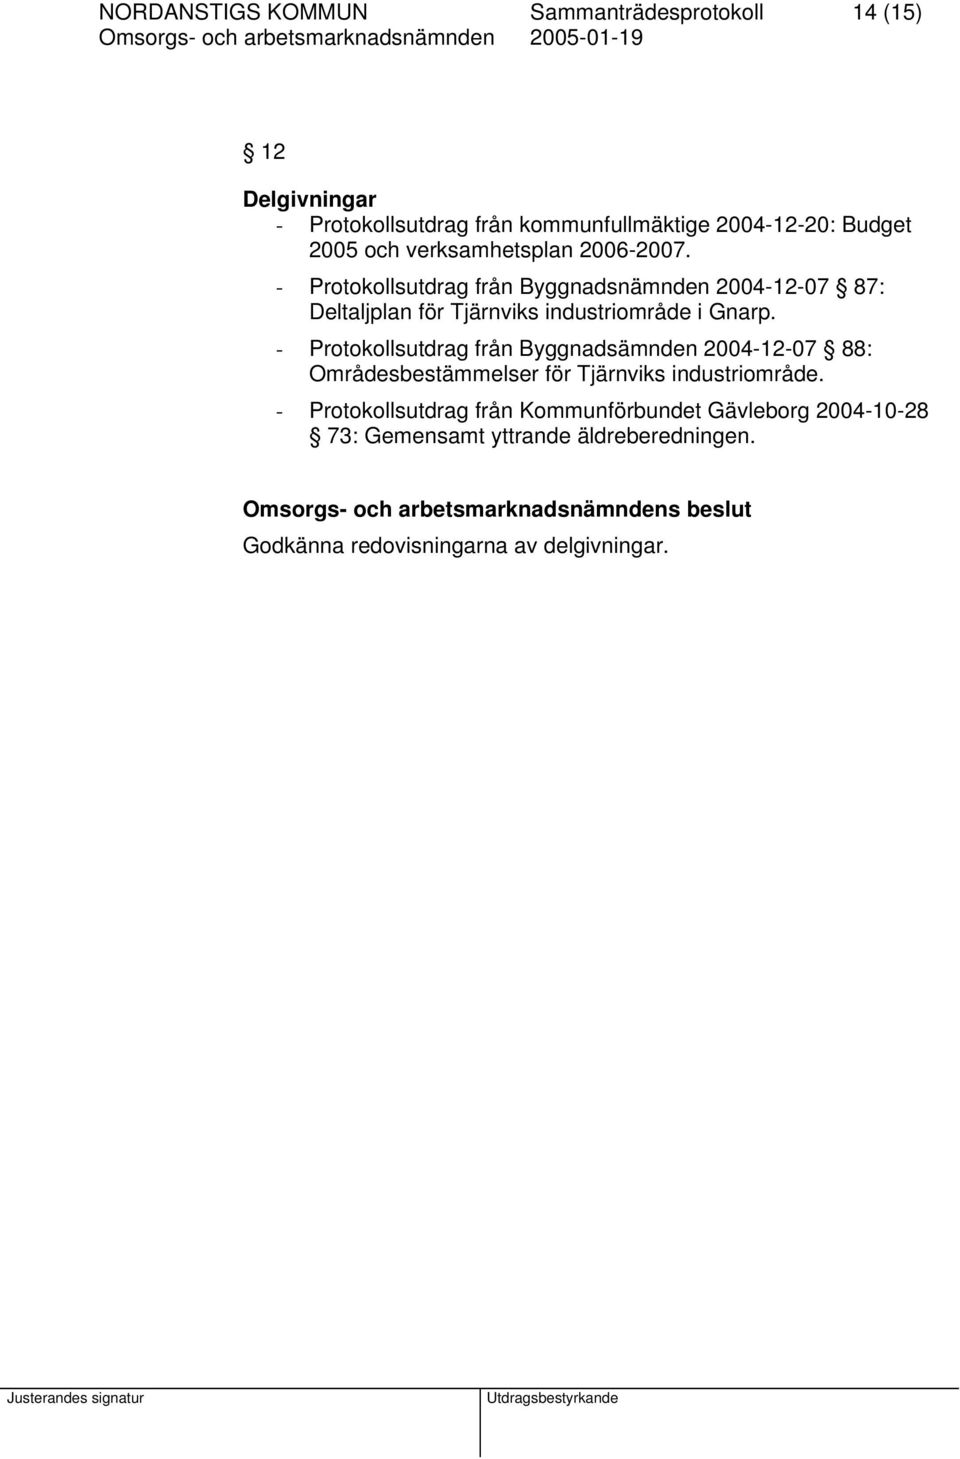 - Protokollsutdrag från Byggnadsnämnden 2004-12-07 87: Deltaljplan för Tjärnviks industriområde i Gnarp.